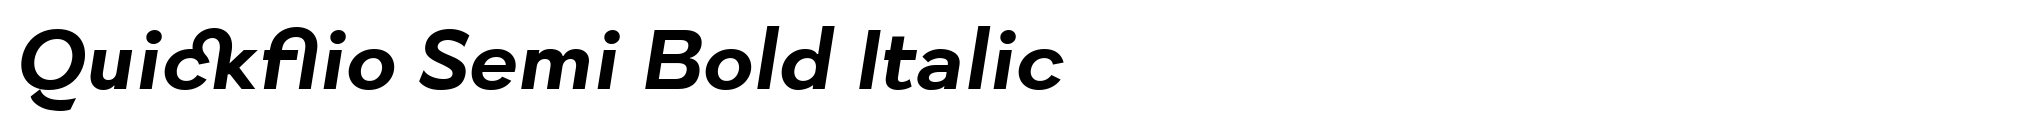 Quickflio Semi Bold Italic image